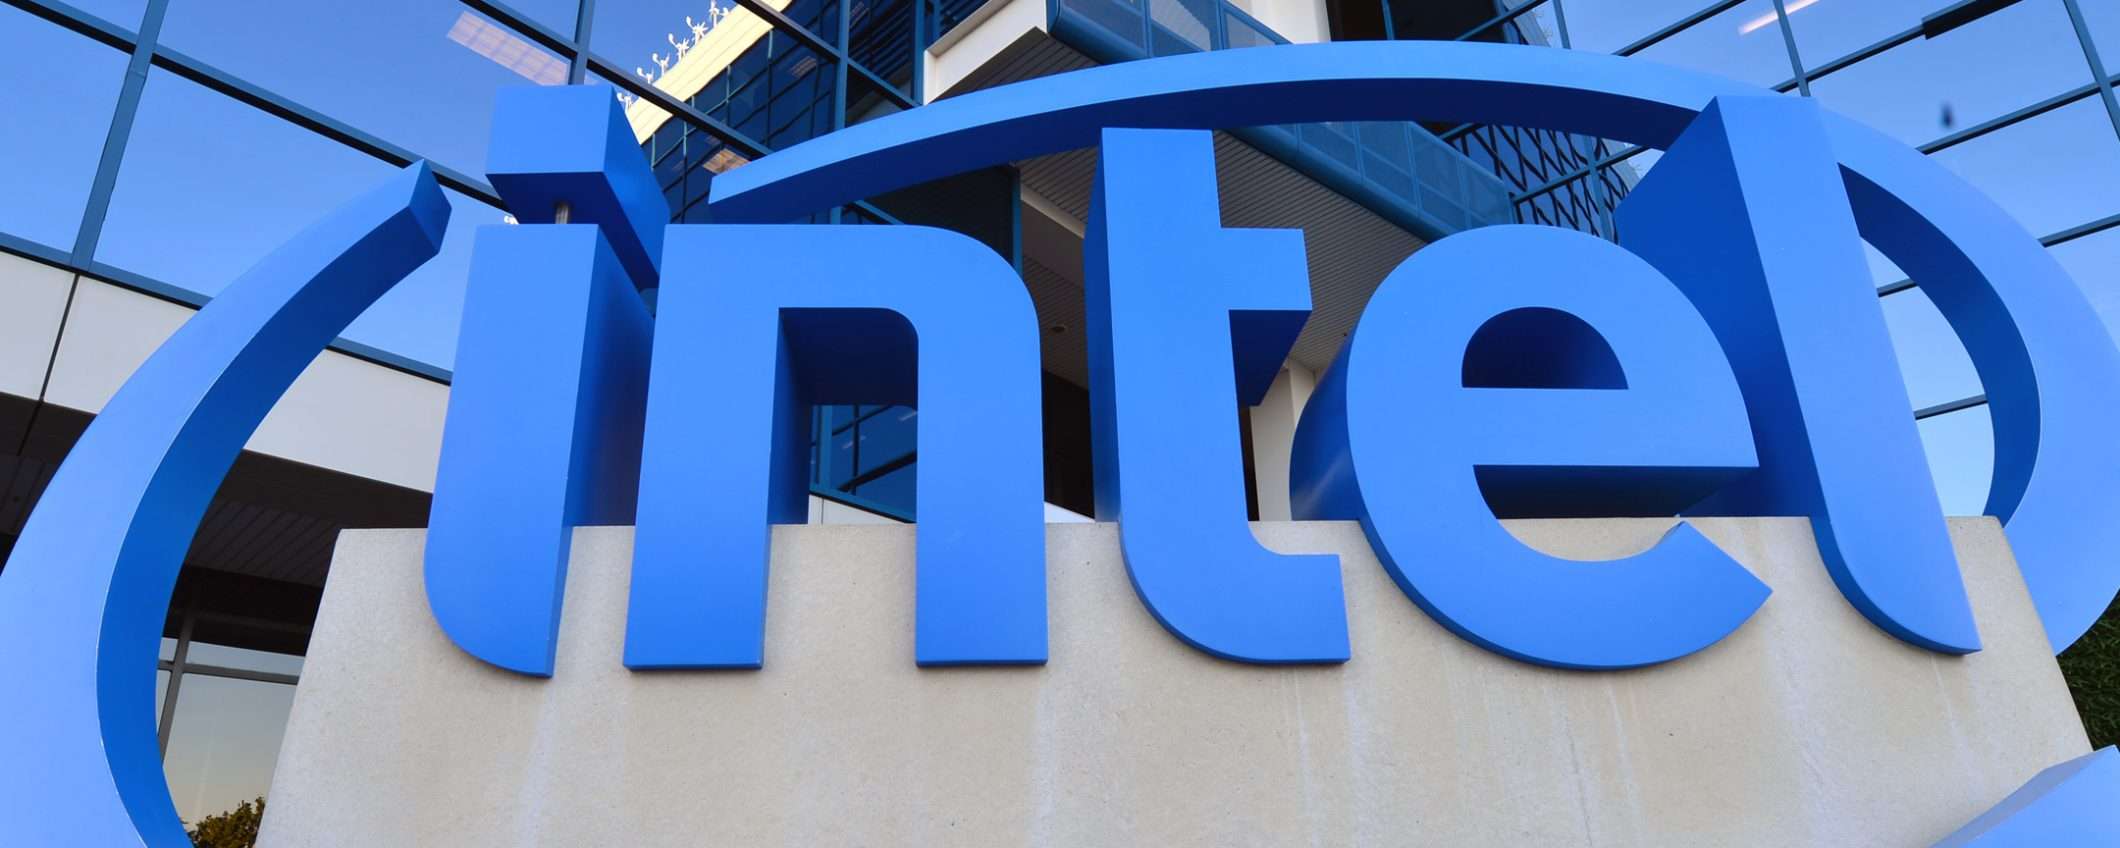 Intel, leak da 20 GB: documenti interni e riservati